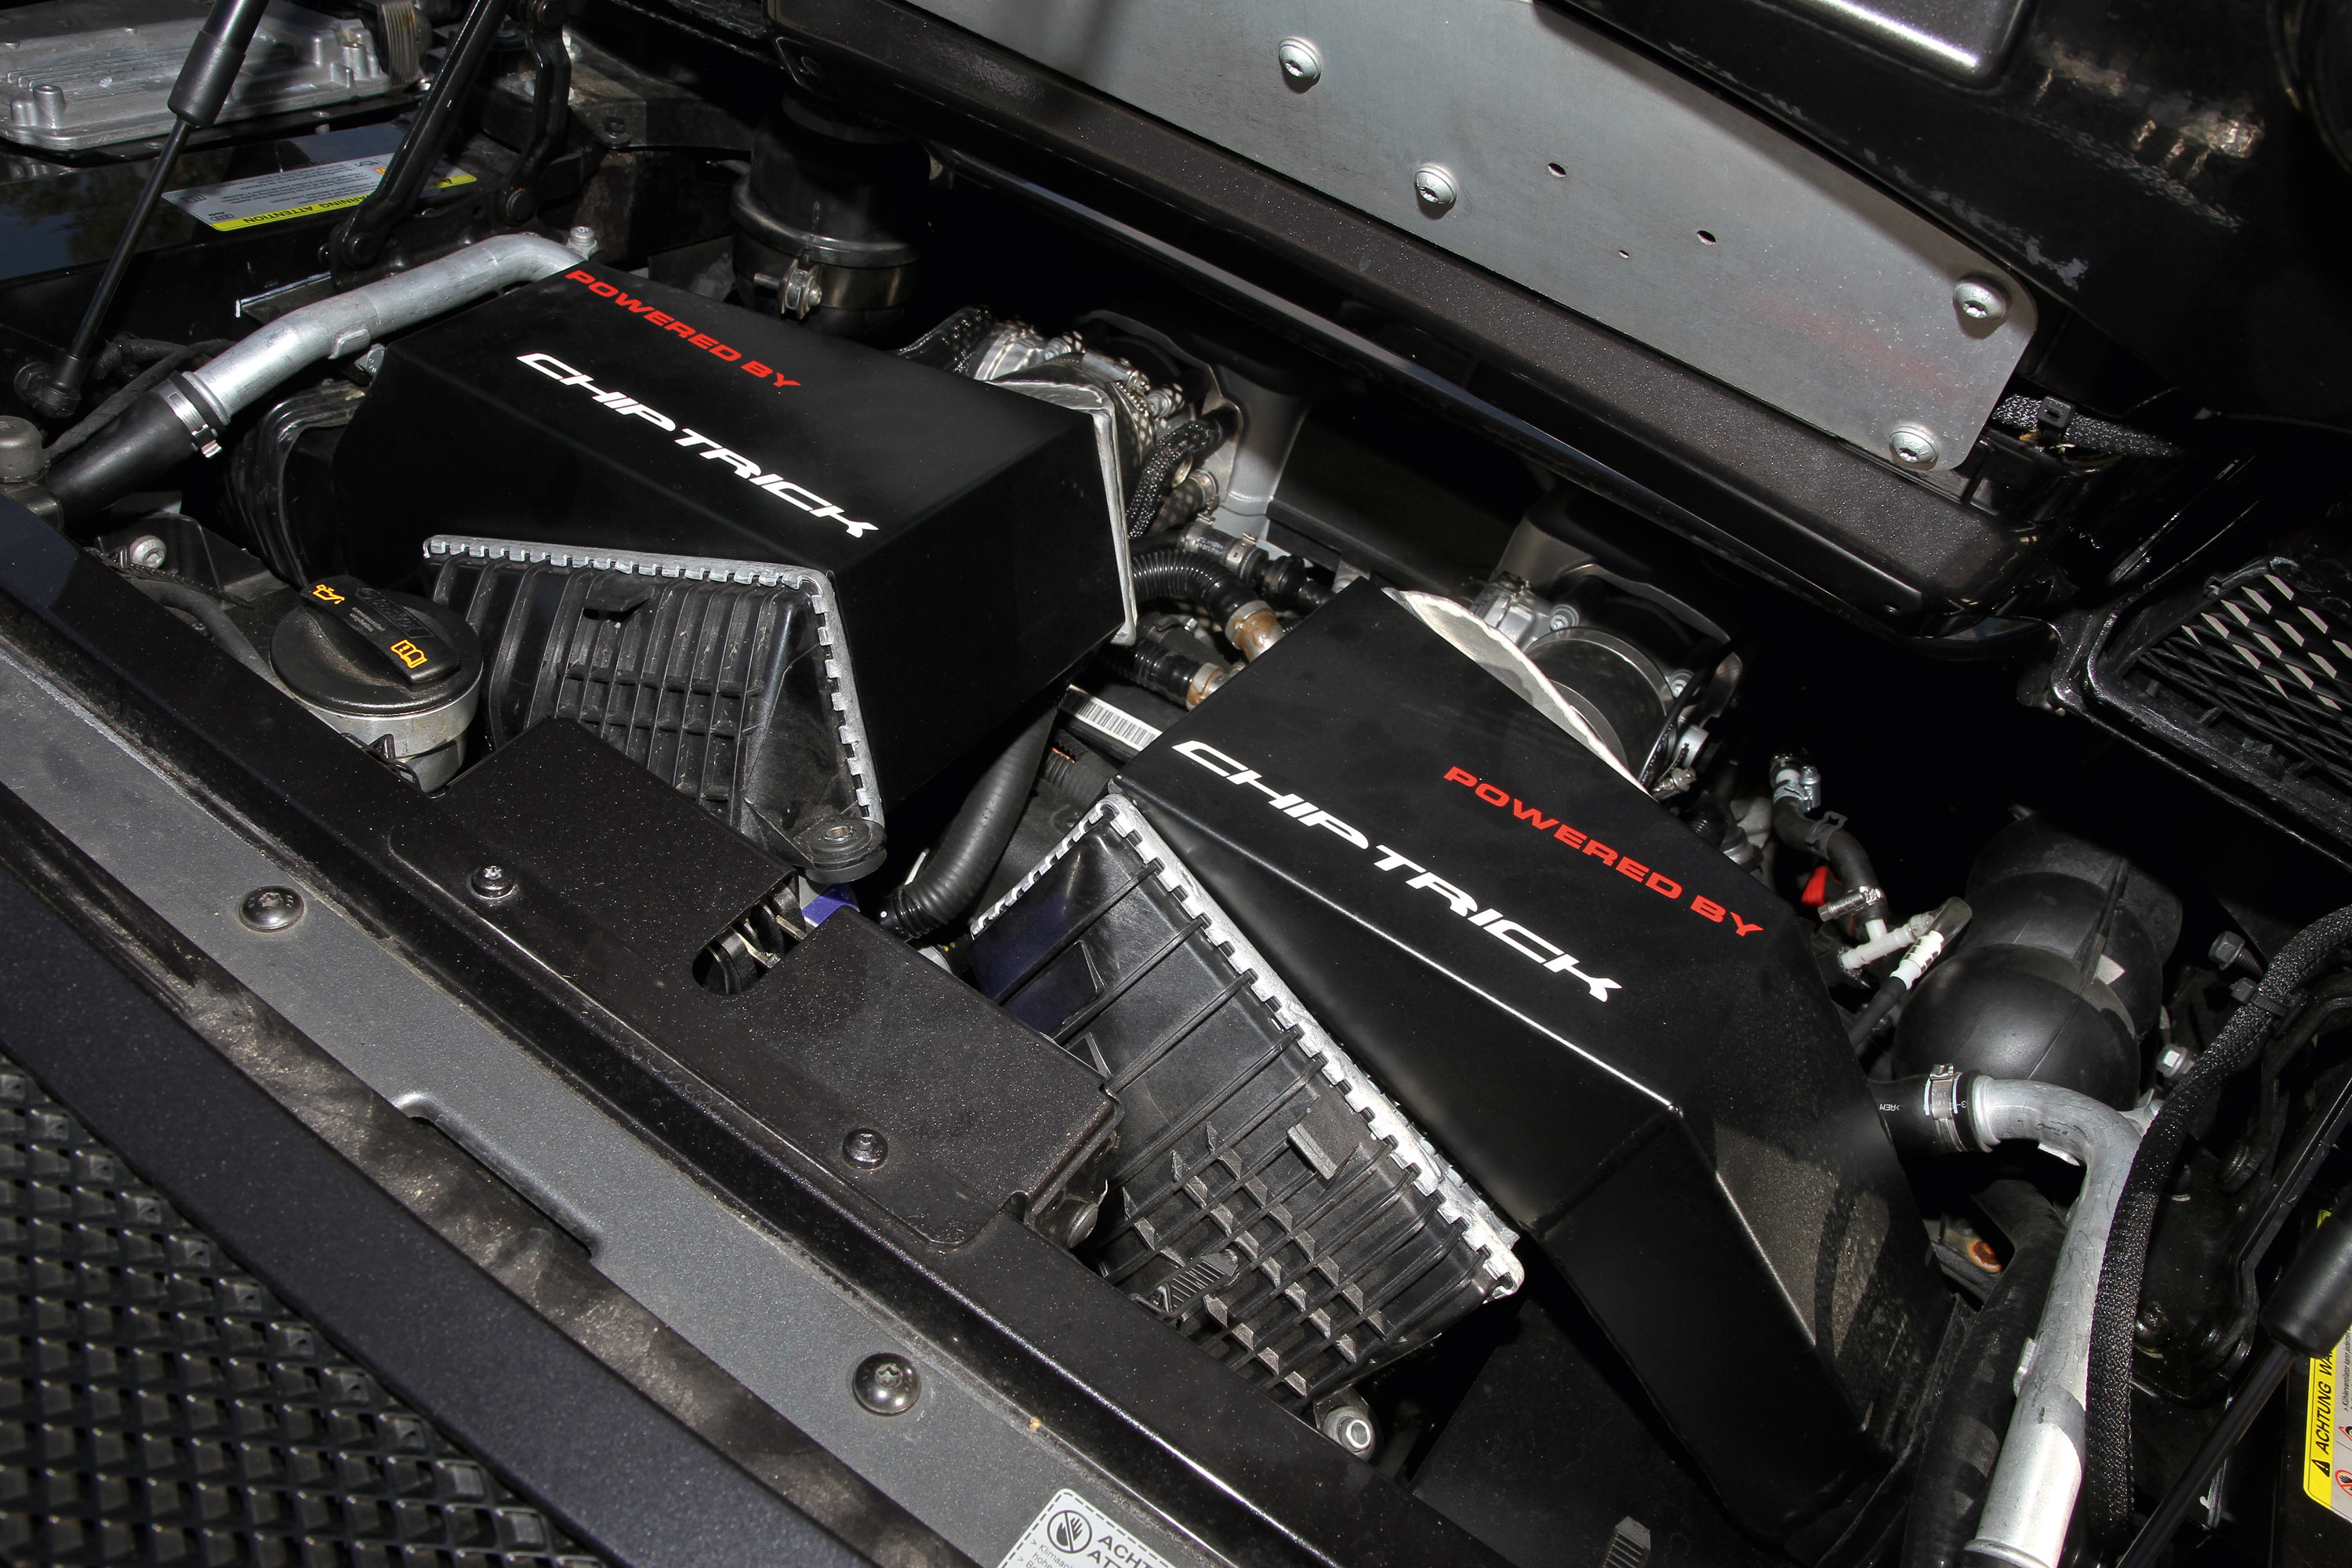 K.MAN Audi R8 Bi-Turbo GTK